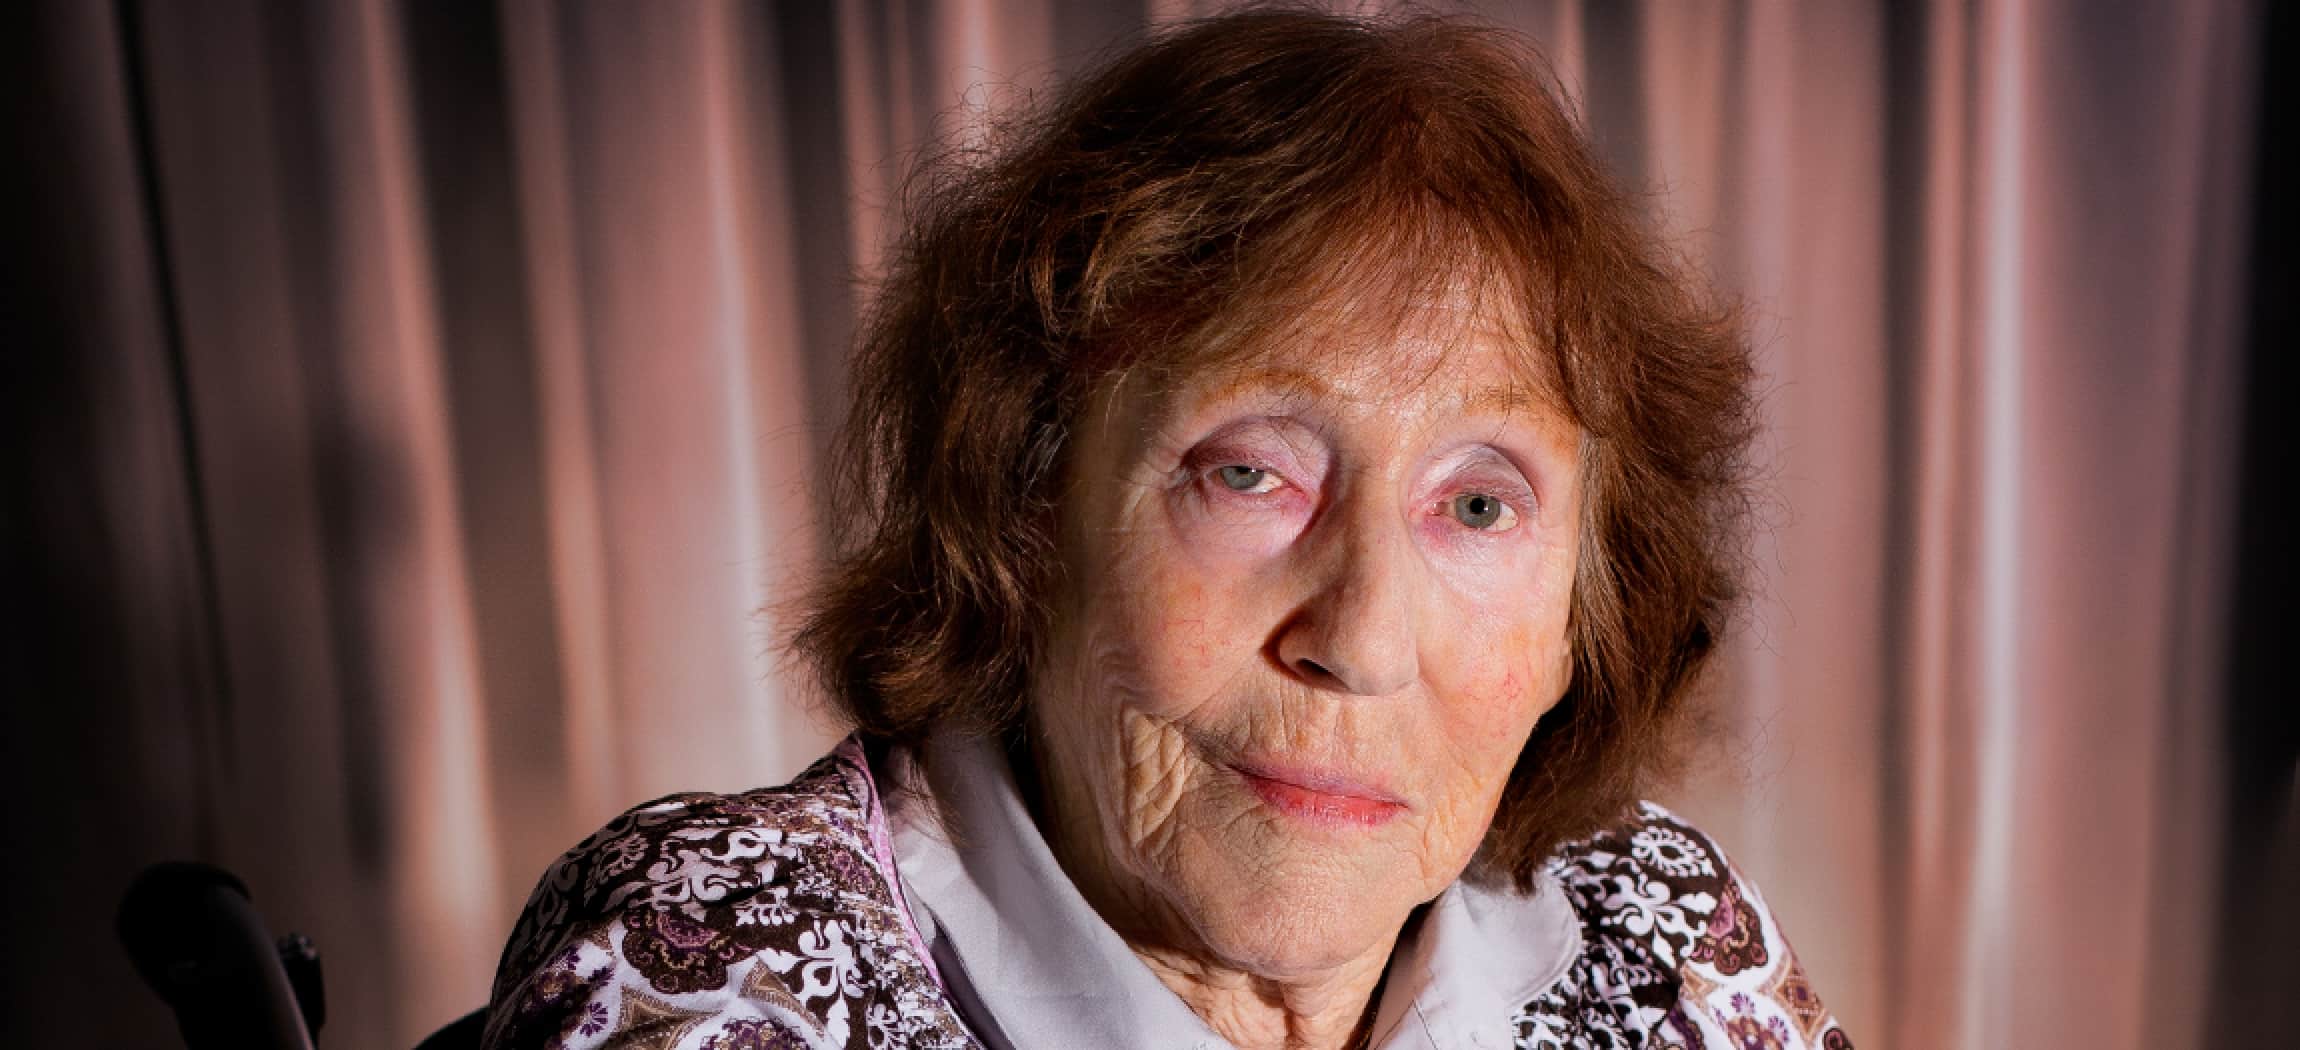 Mevrouw Weij (85) woont in verpleeghuis Rozenholm Aalsmeer - uit de serie Mensen van Amstelring